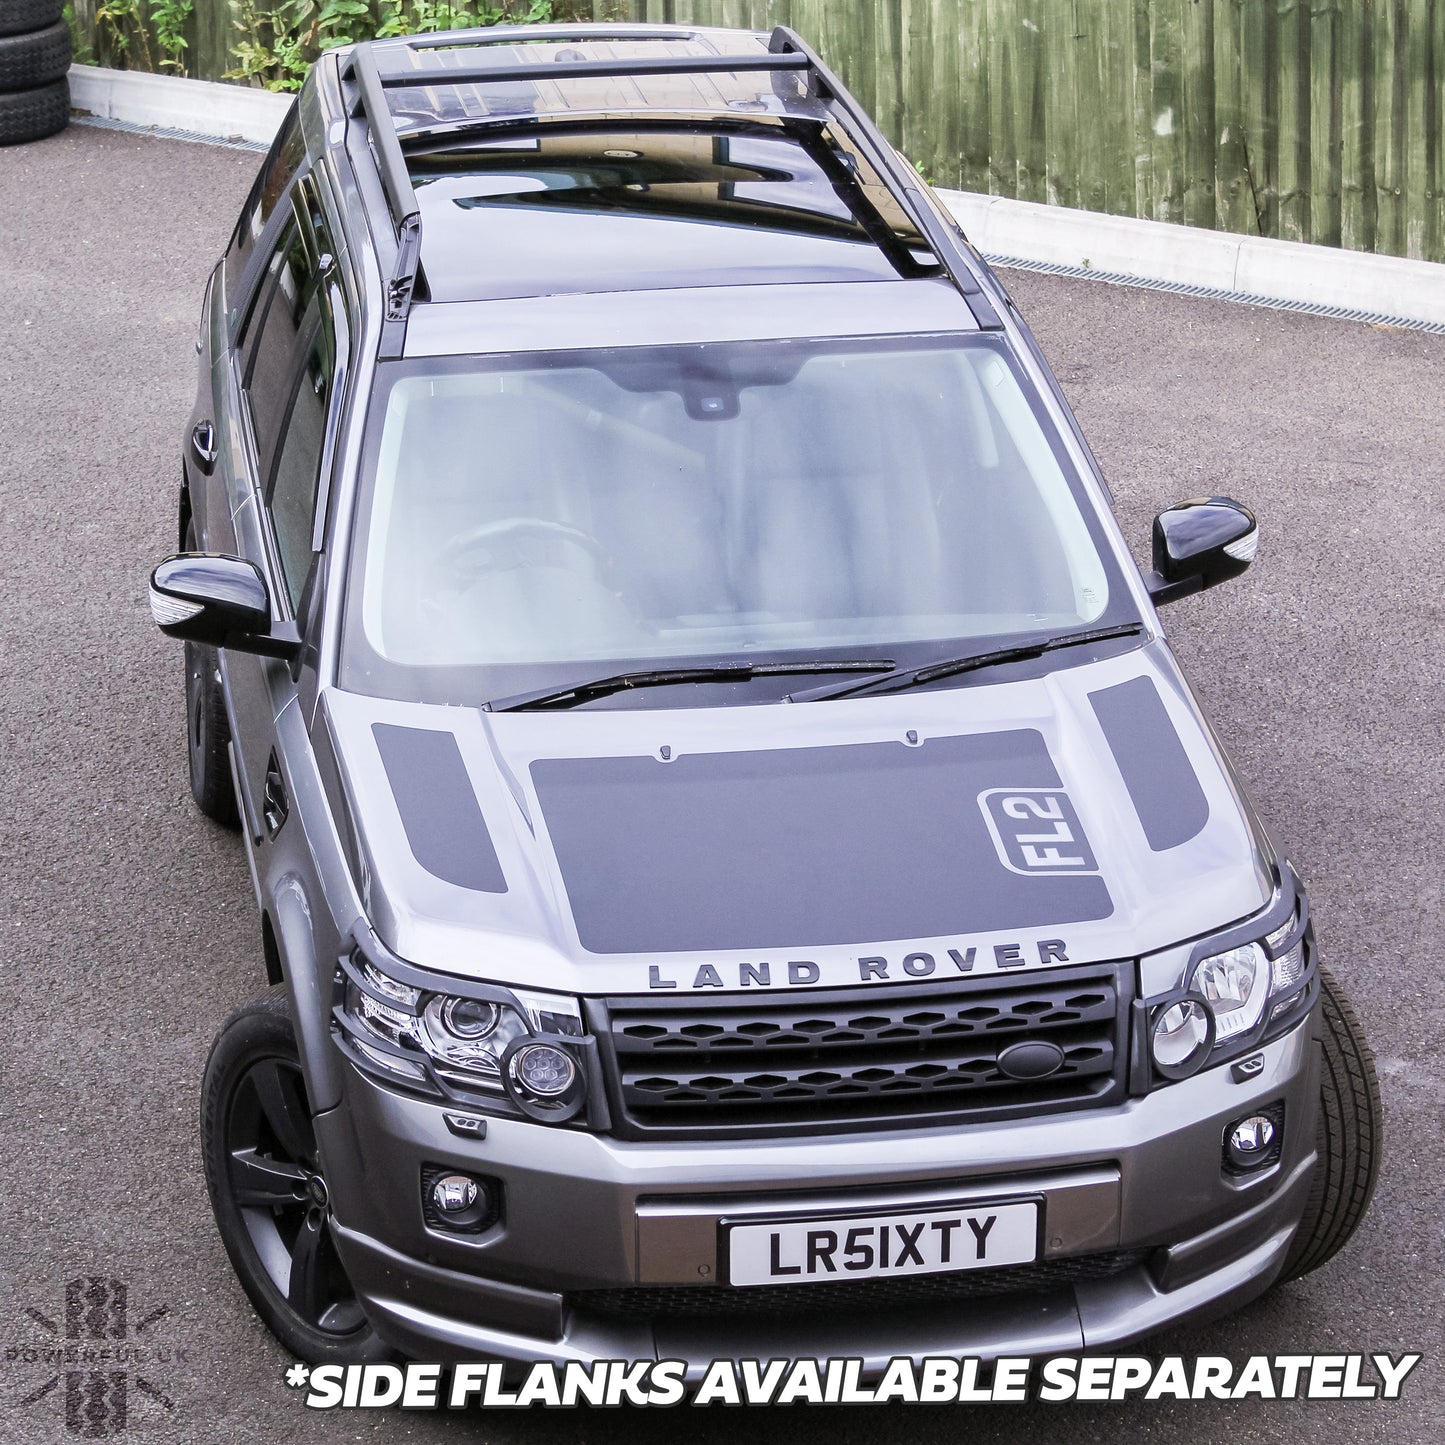 Bonnet Decal Set - Single Insert for Land Rover Freelander 2